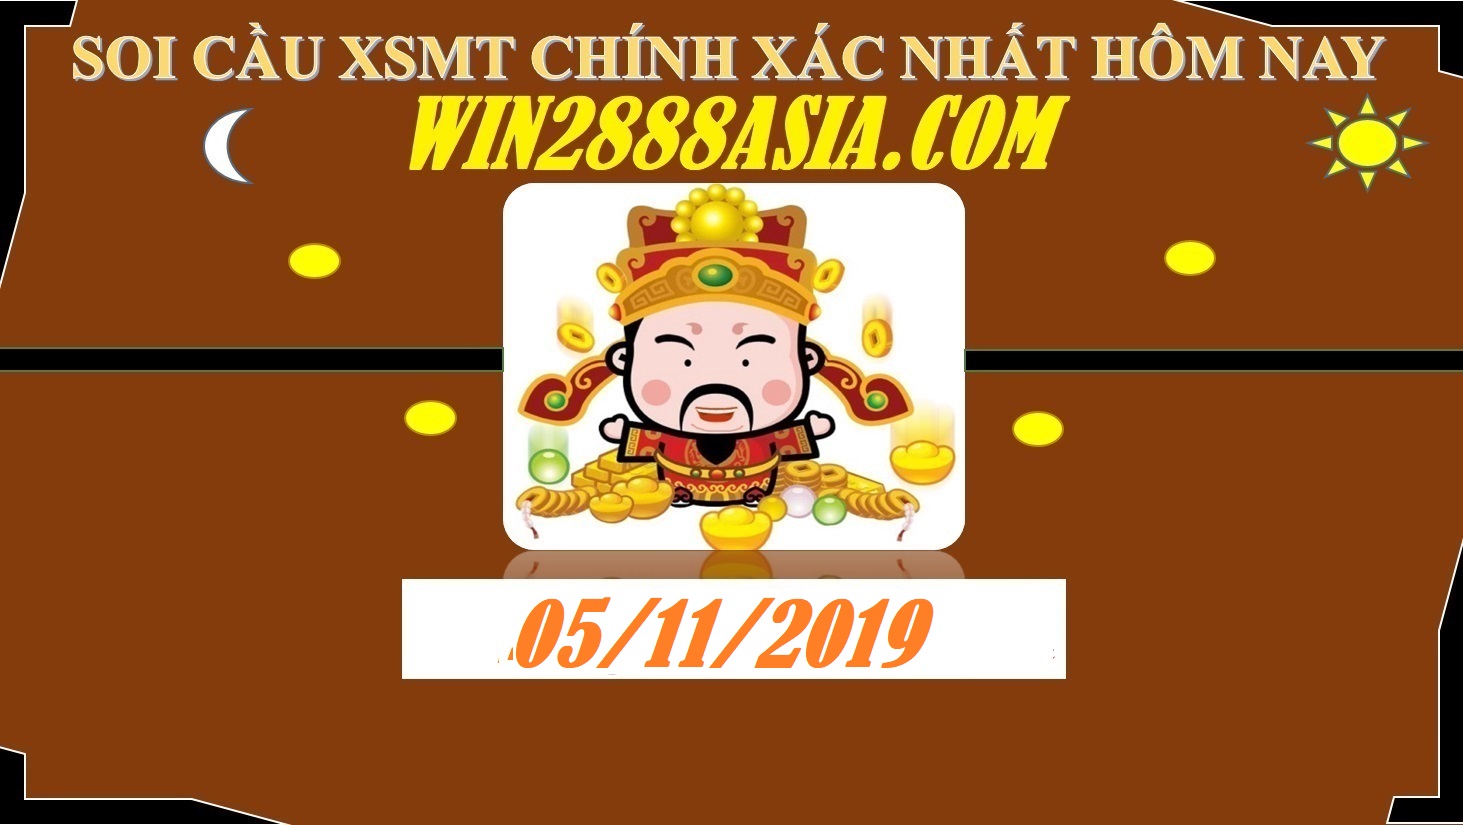 Soi cầu XSMT 5-11-2019 Win2888